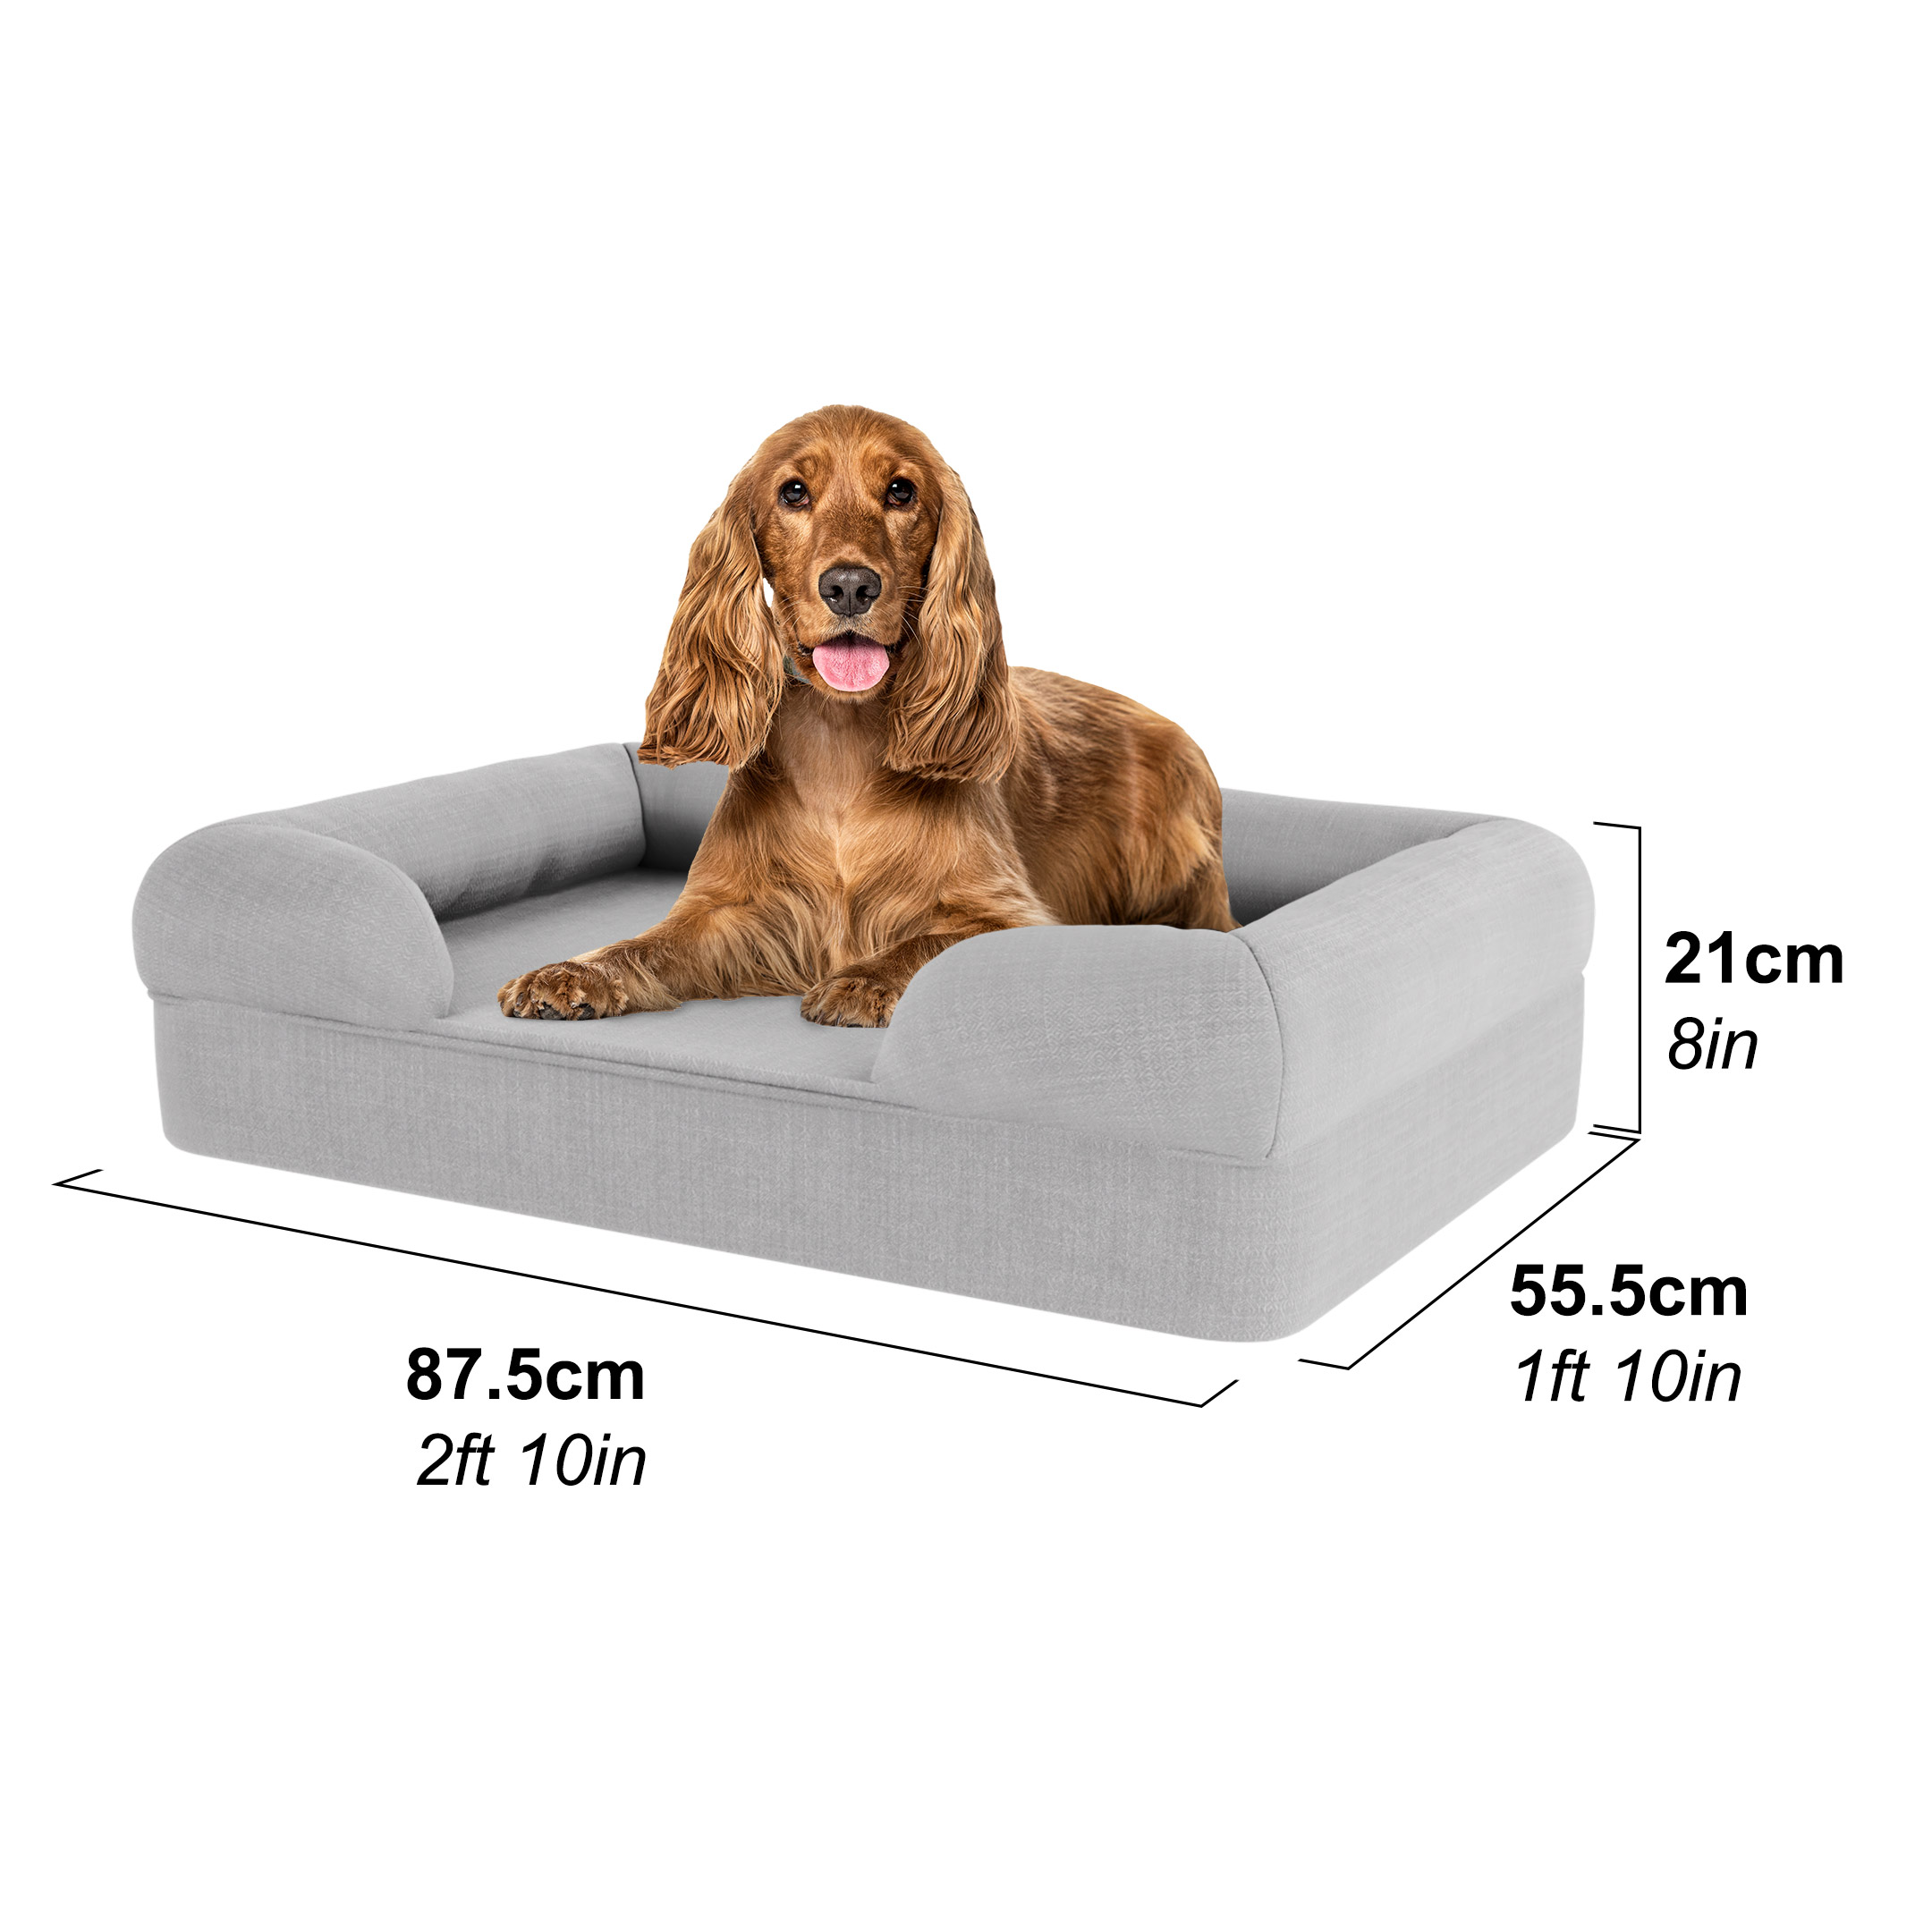 Cocker in a medium dog bed